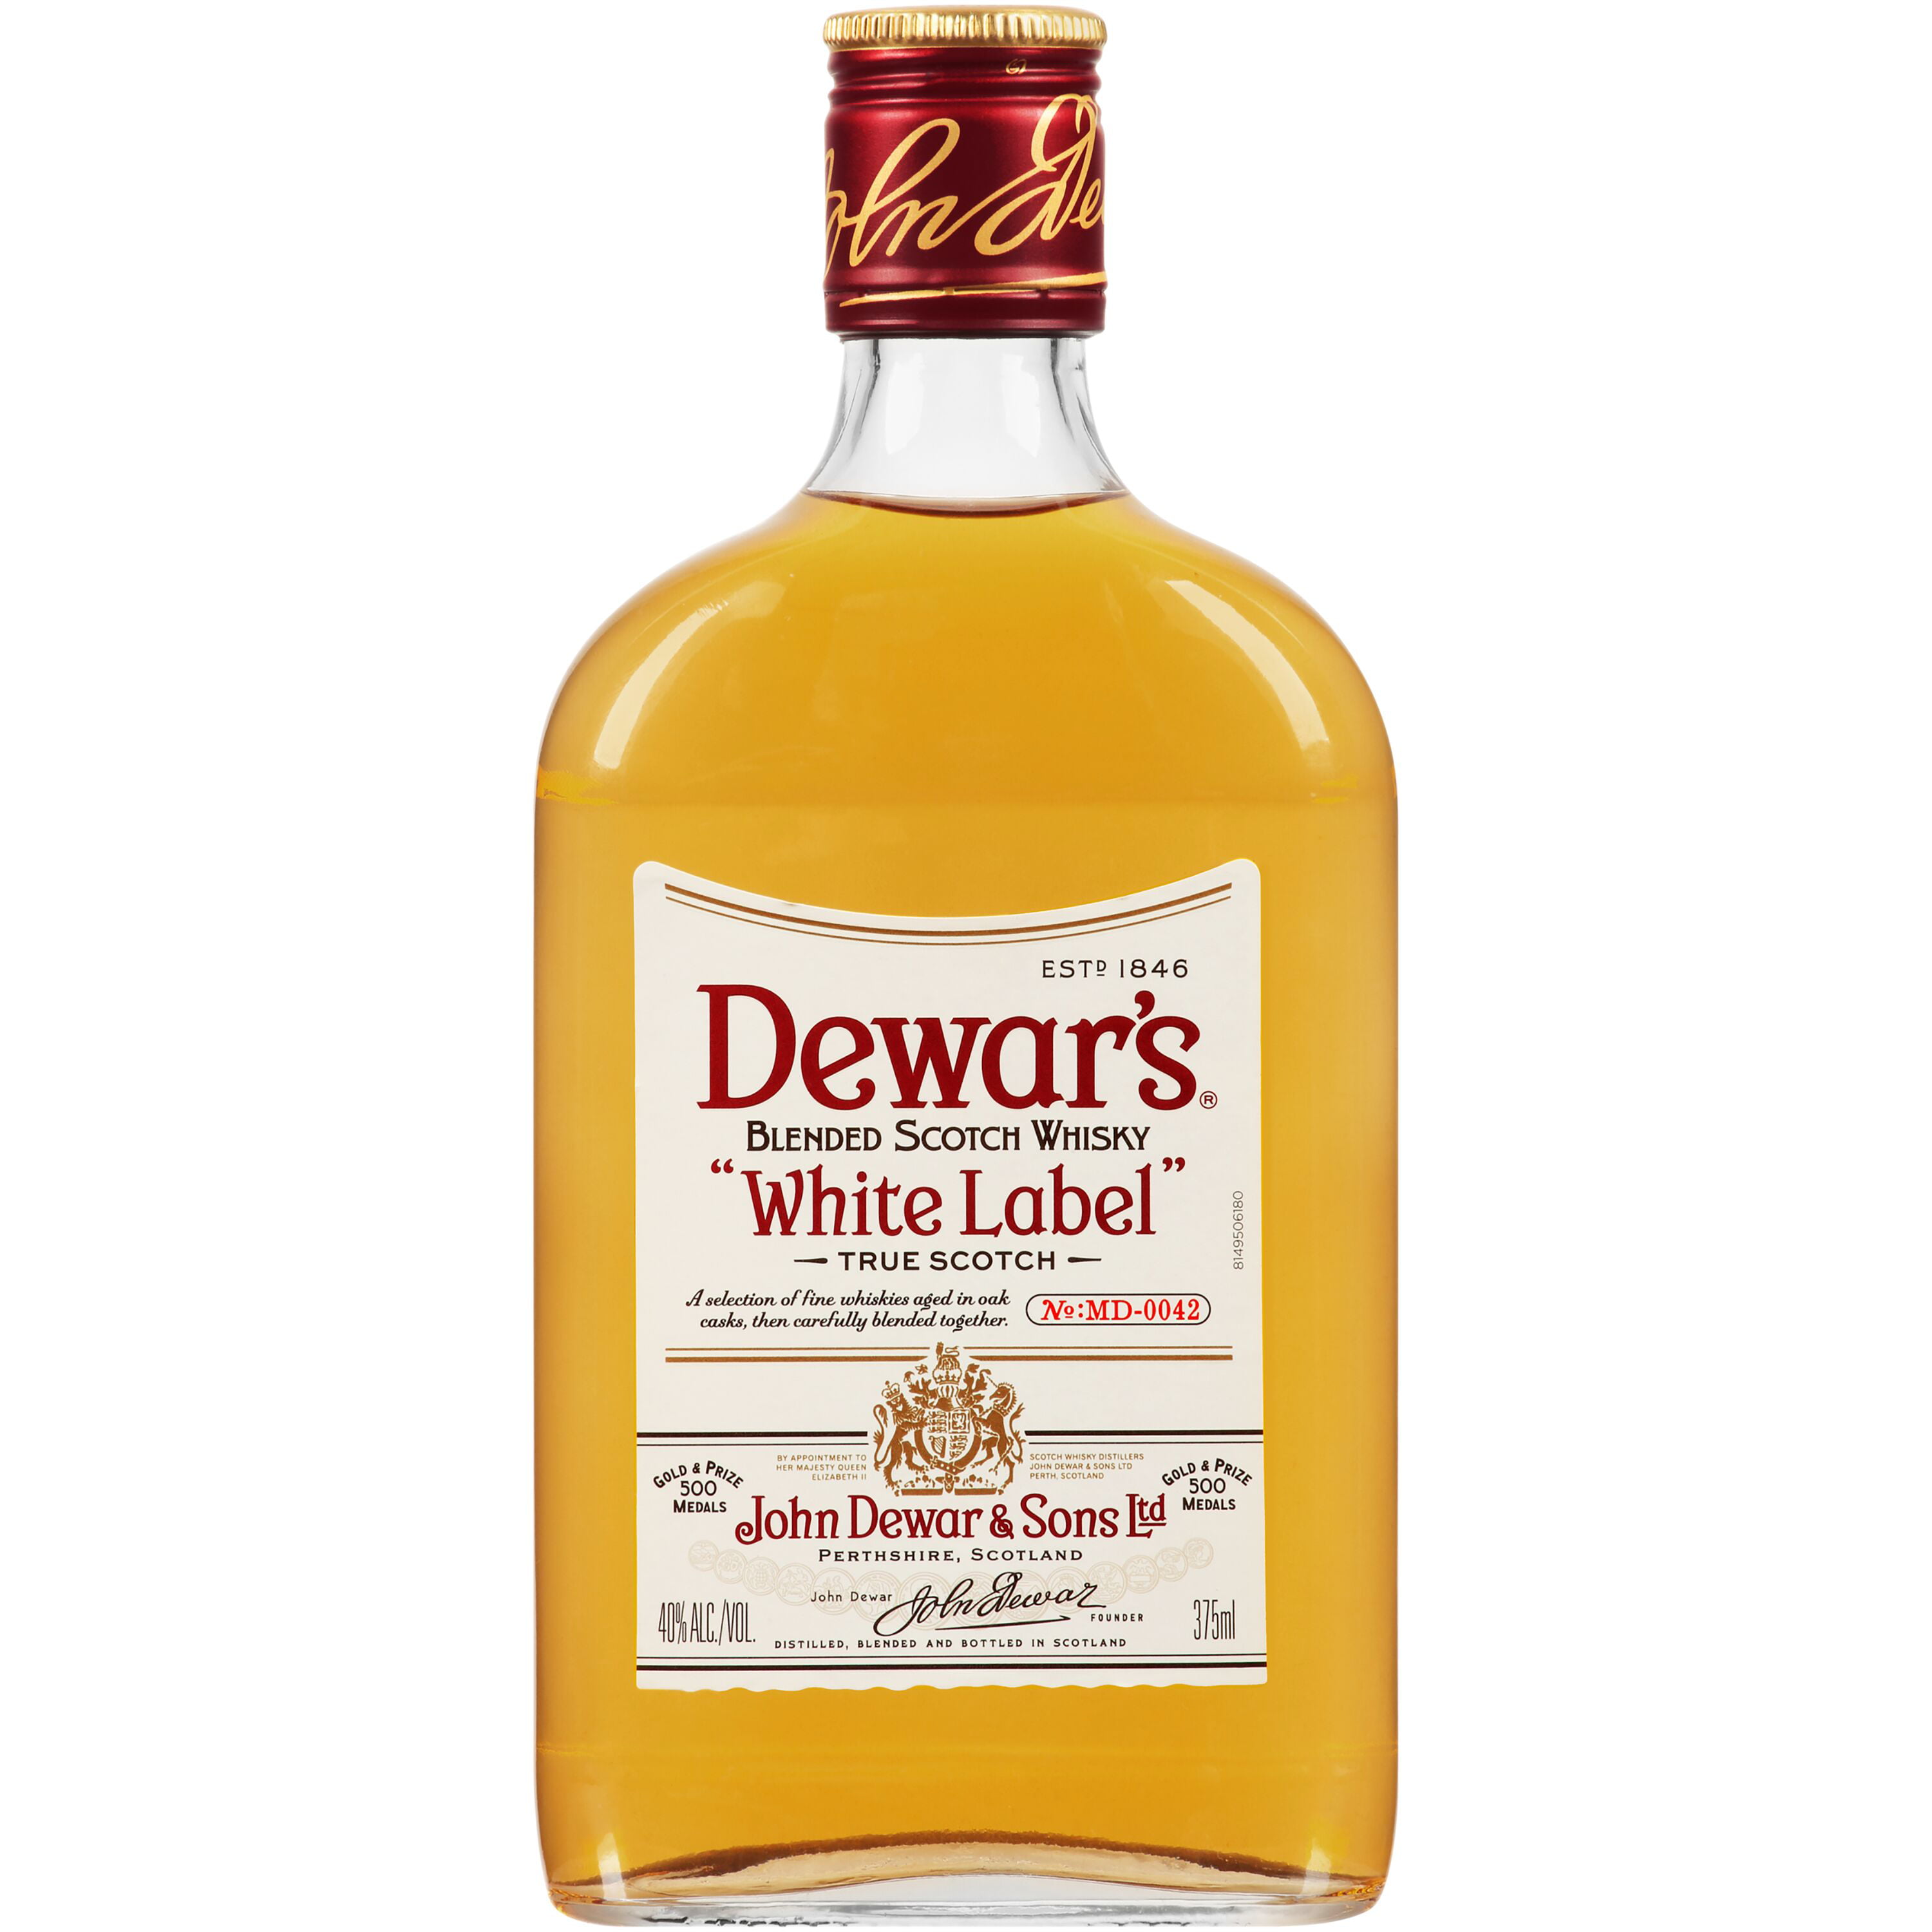 Виски дюарс лейбл. Дьюарс Уайт. Виски Dewar's White Label. Дюарс, Уайт лейбл, 40%. Dewars виски 1846.